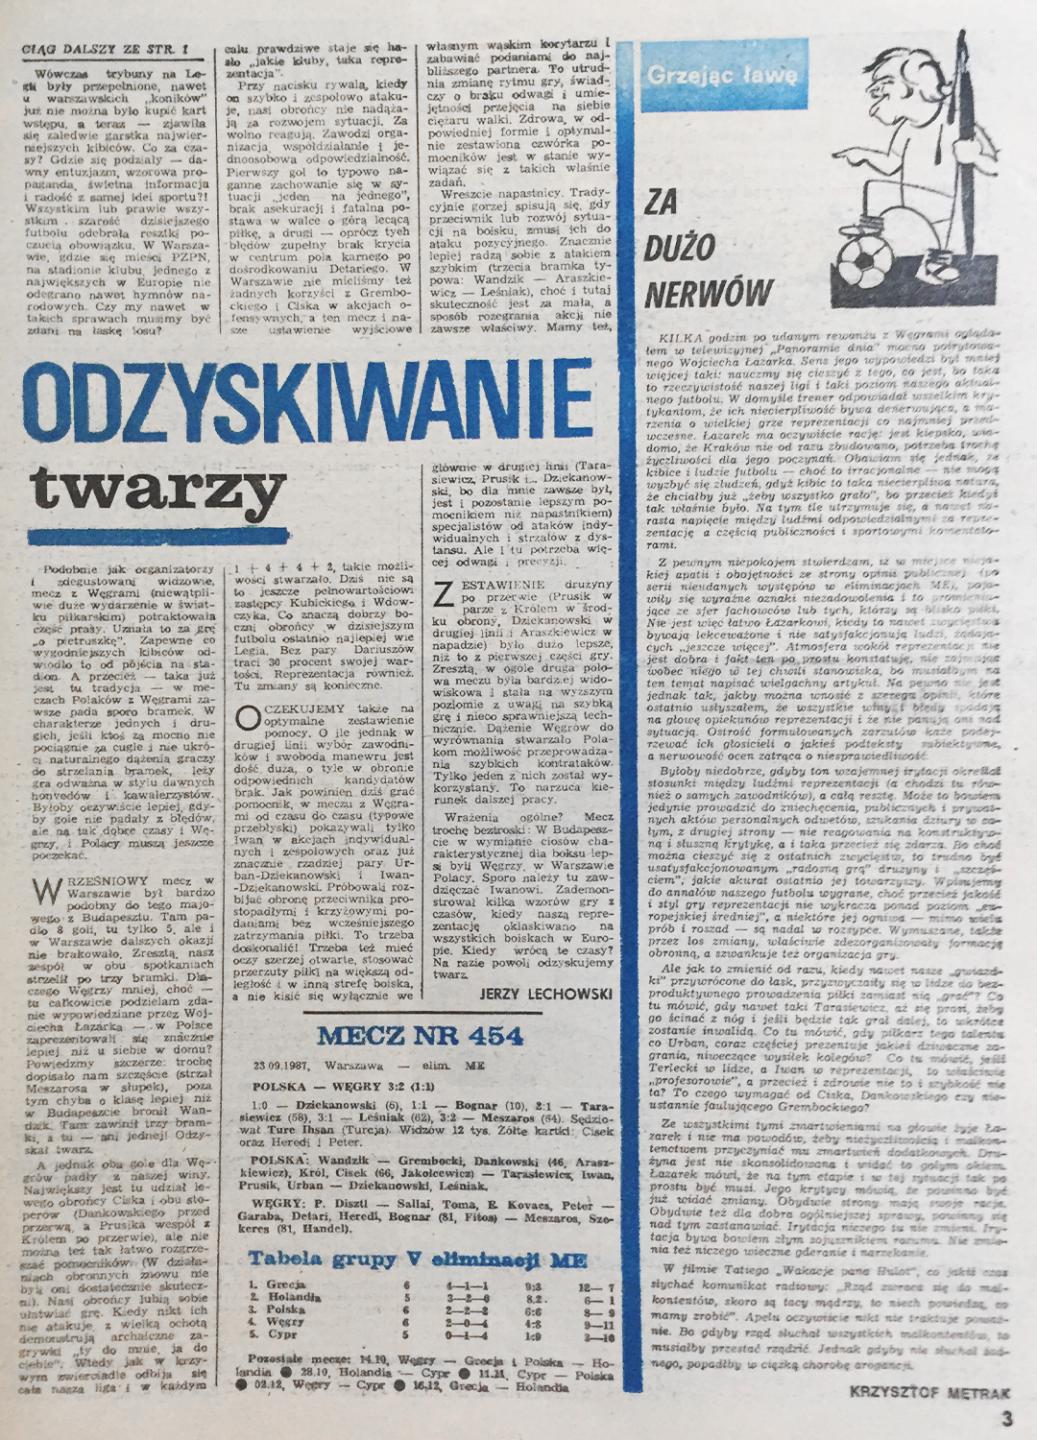 Piłka nożna po meczu Polska - Węgry (23.09.1987)